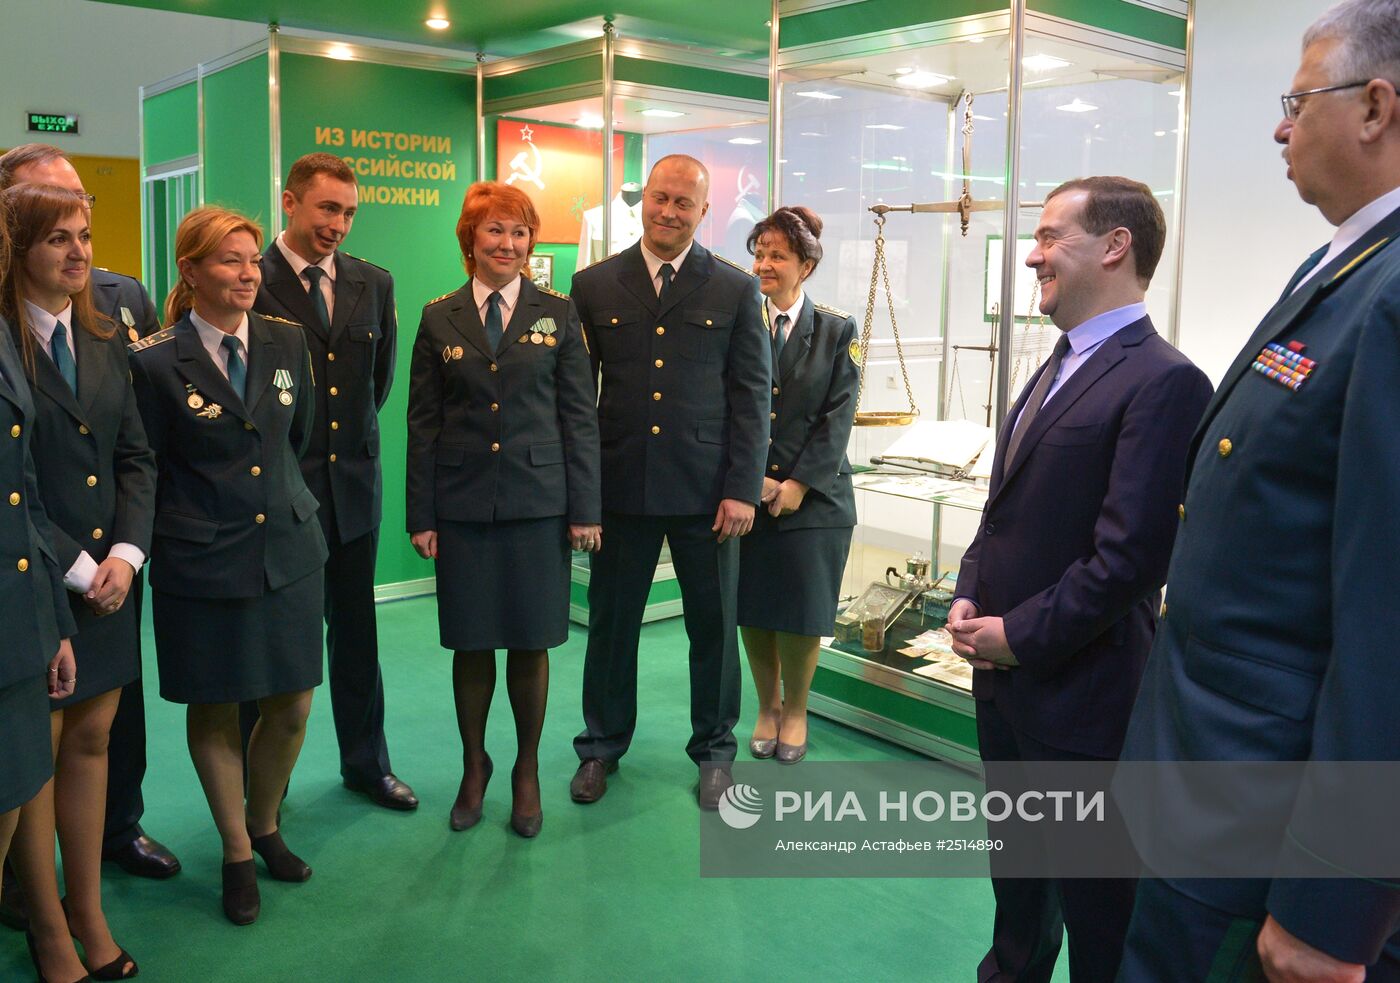 Д.Медведев посетил международную выставку "Таможенная служба – 2014"